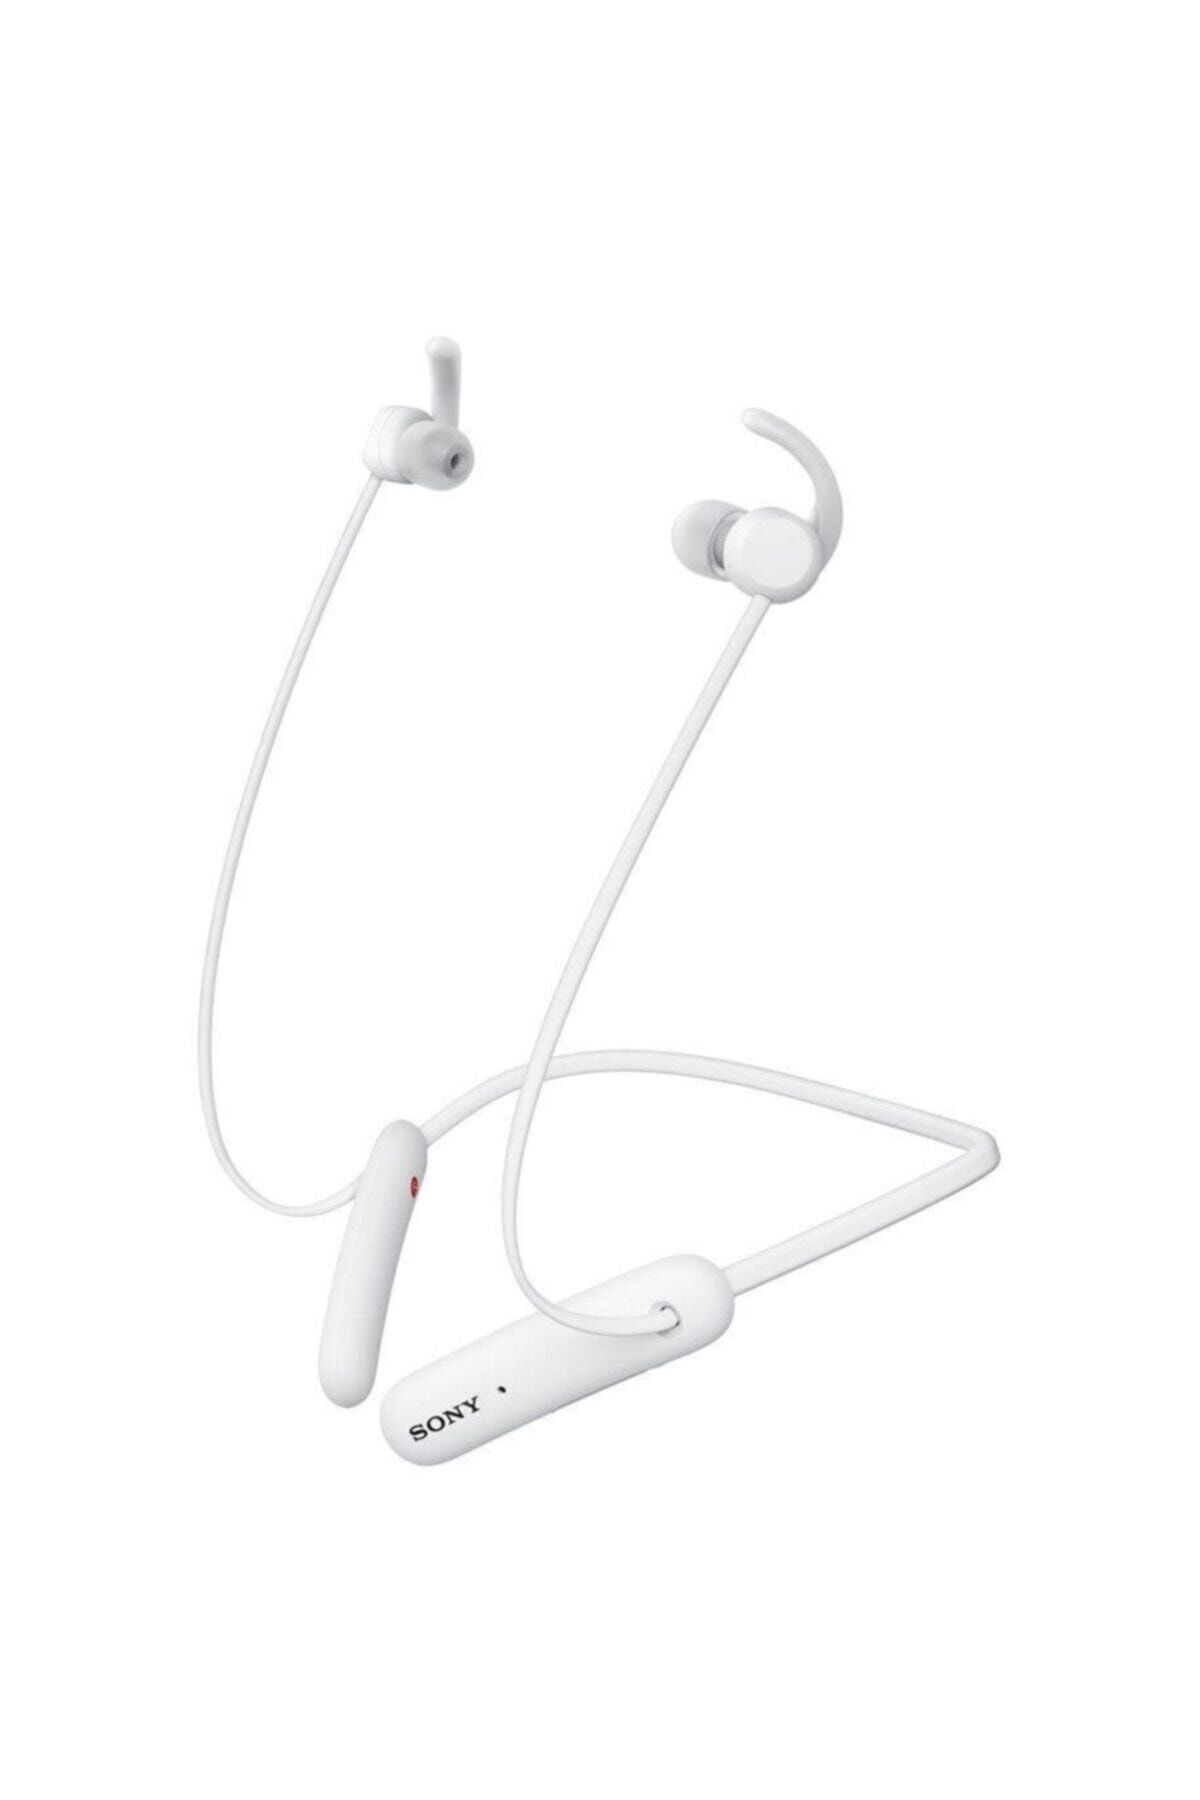 Sony Beyaz Ipx5 Extra Bass Kulakiçi Bluetooth Kulaklık Wı-sp510